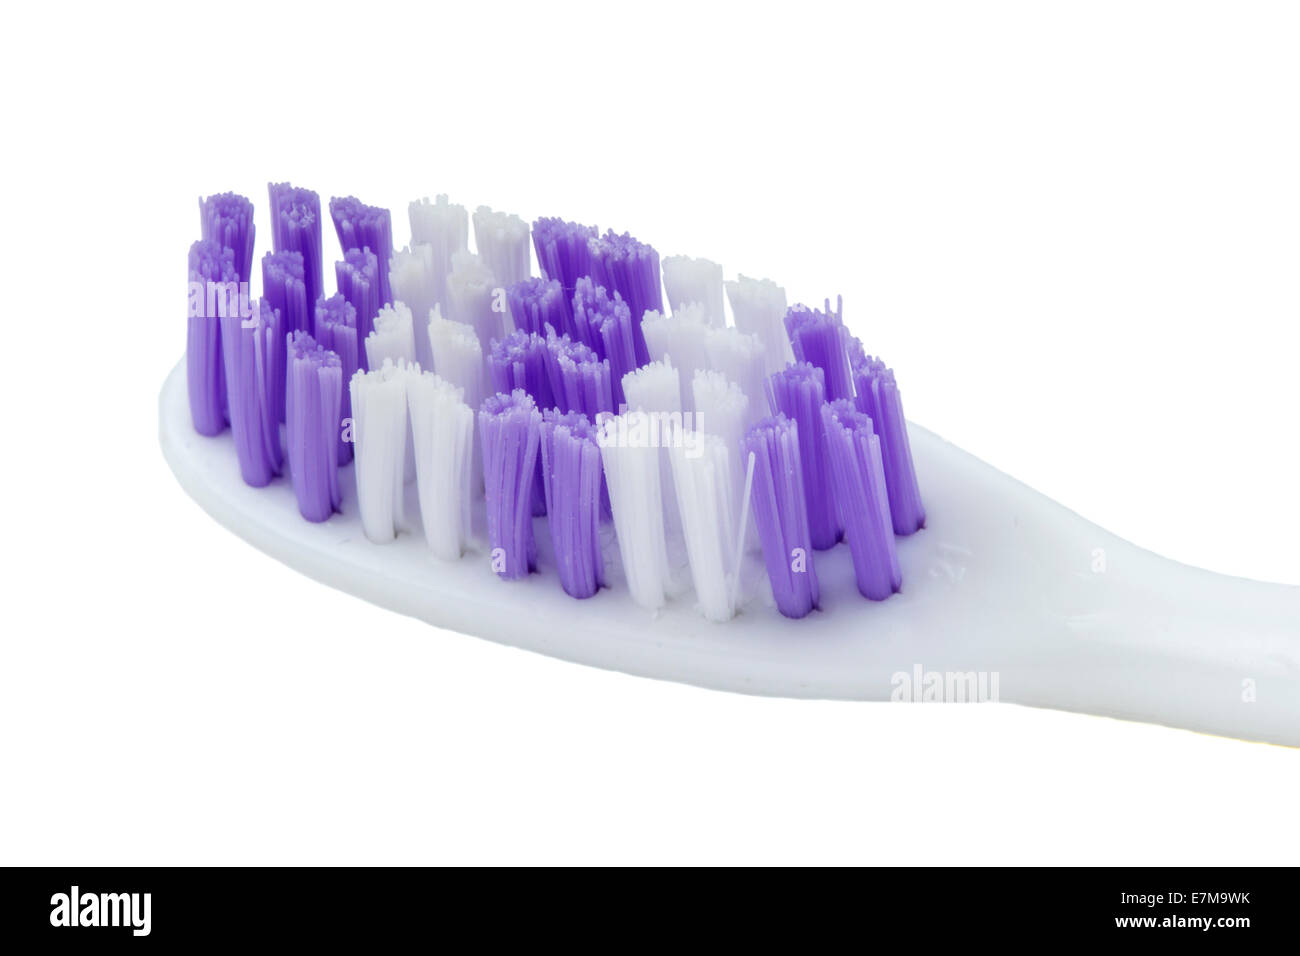 Cepillo de dientes de color malva aislado sobre un fondo blanco. Foto de stock